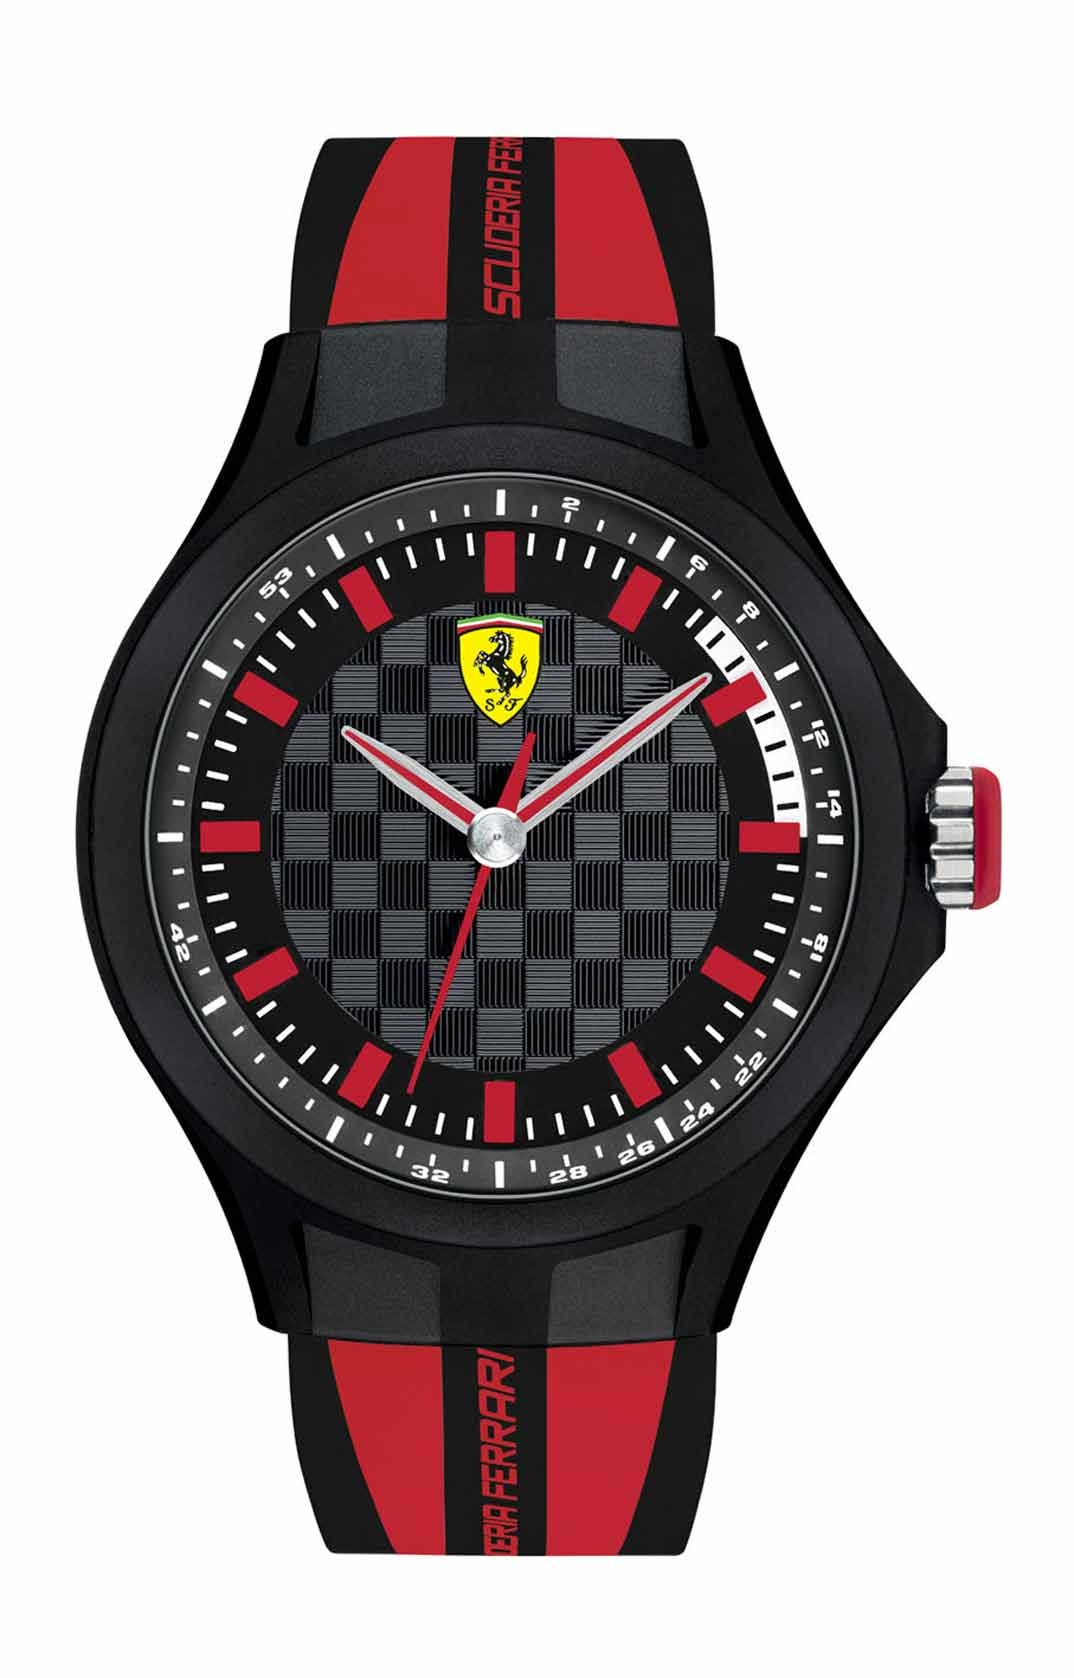 Ferrari часов. Часы Scuderia Ferrari 0830128. Scuderia Ferrari часы мужские. Наручные часы Ferrari 830005. SF 29.0.14.0372 Scuderia Ferrari часы.